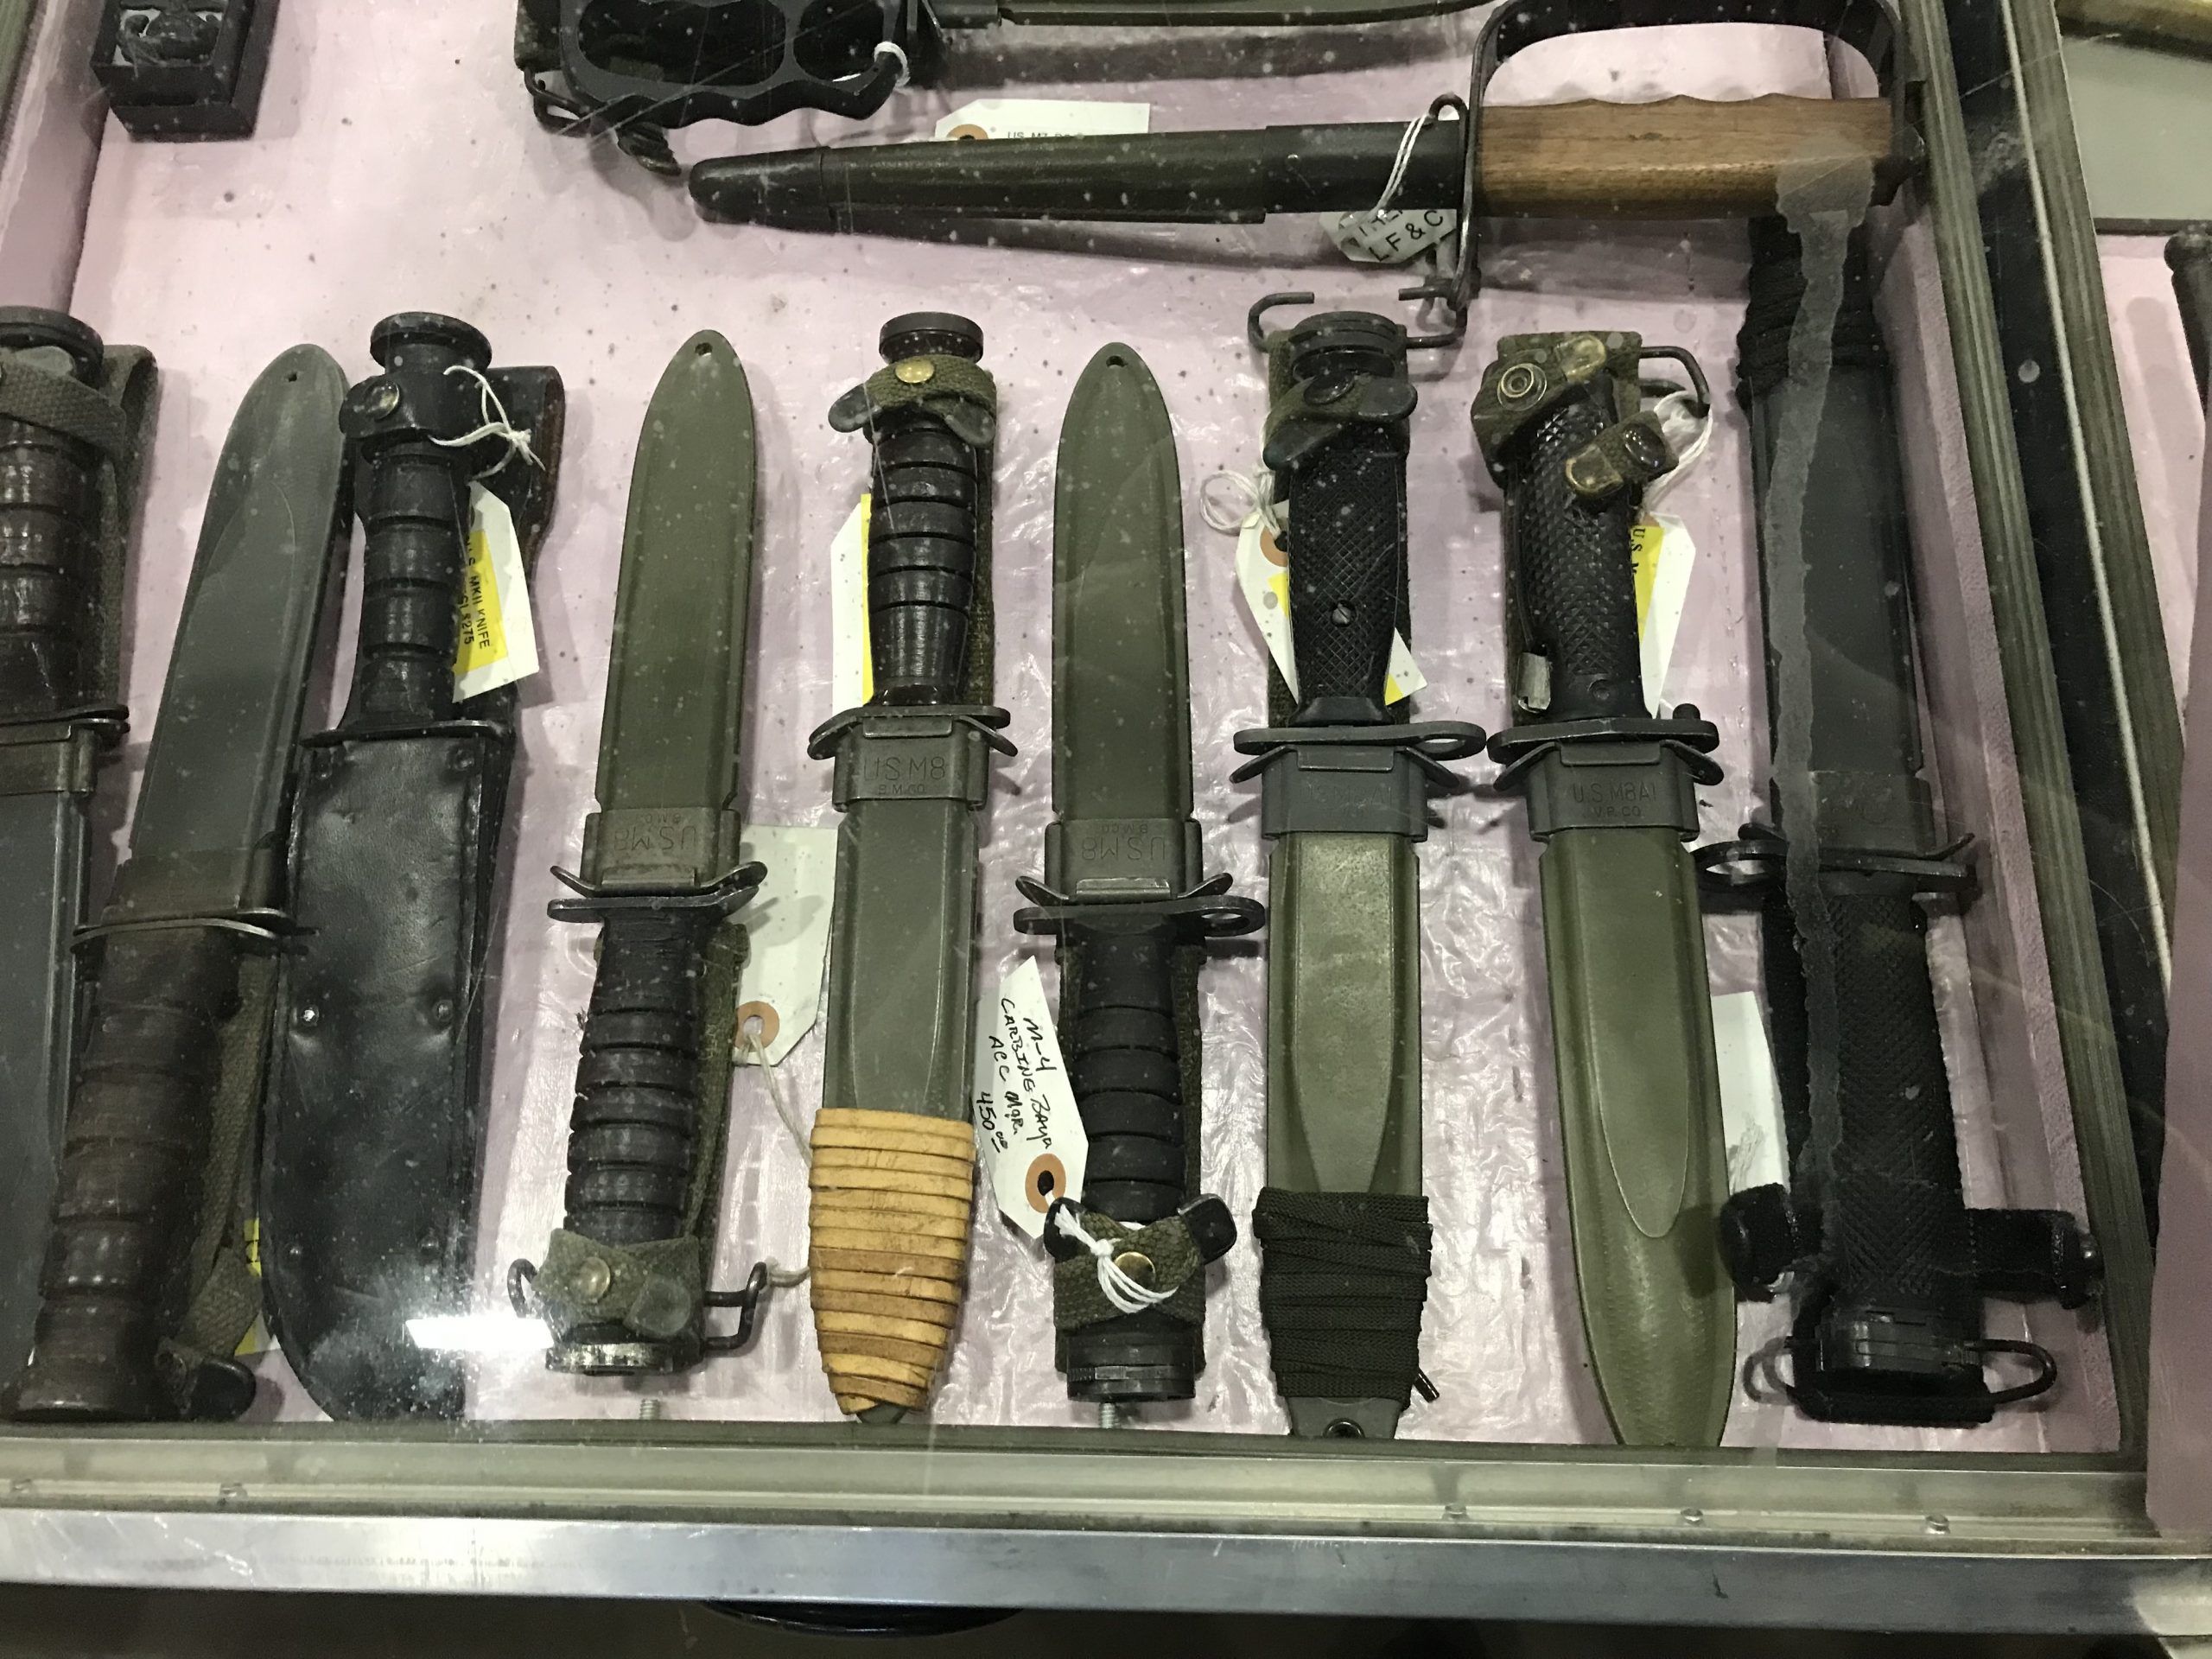 Military knives at Tulsa gun show